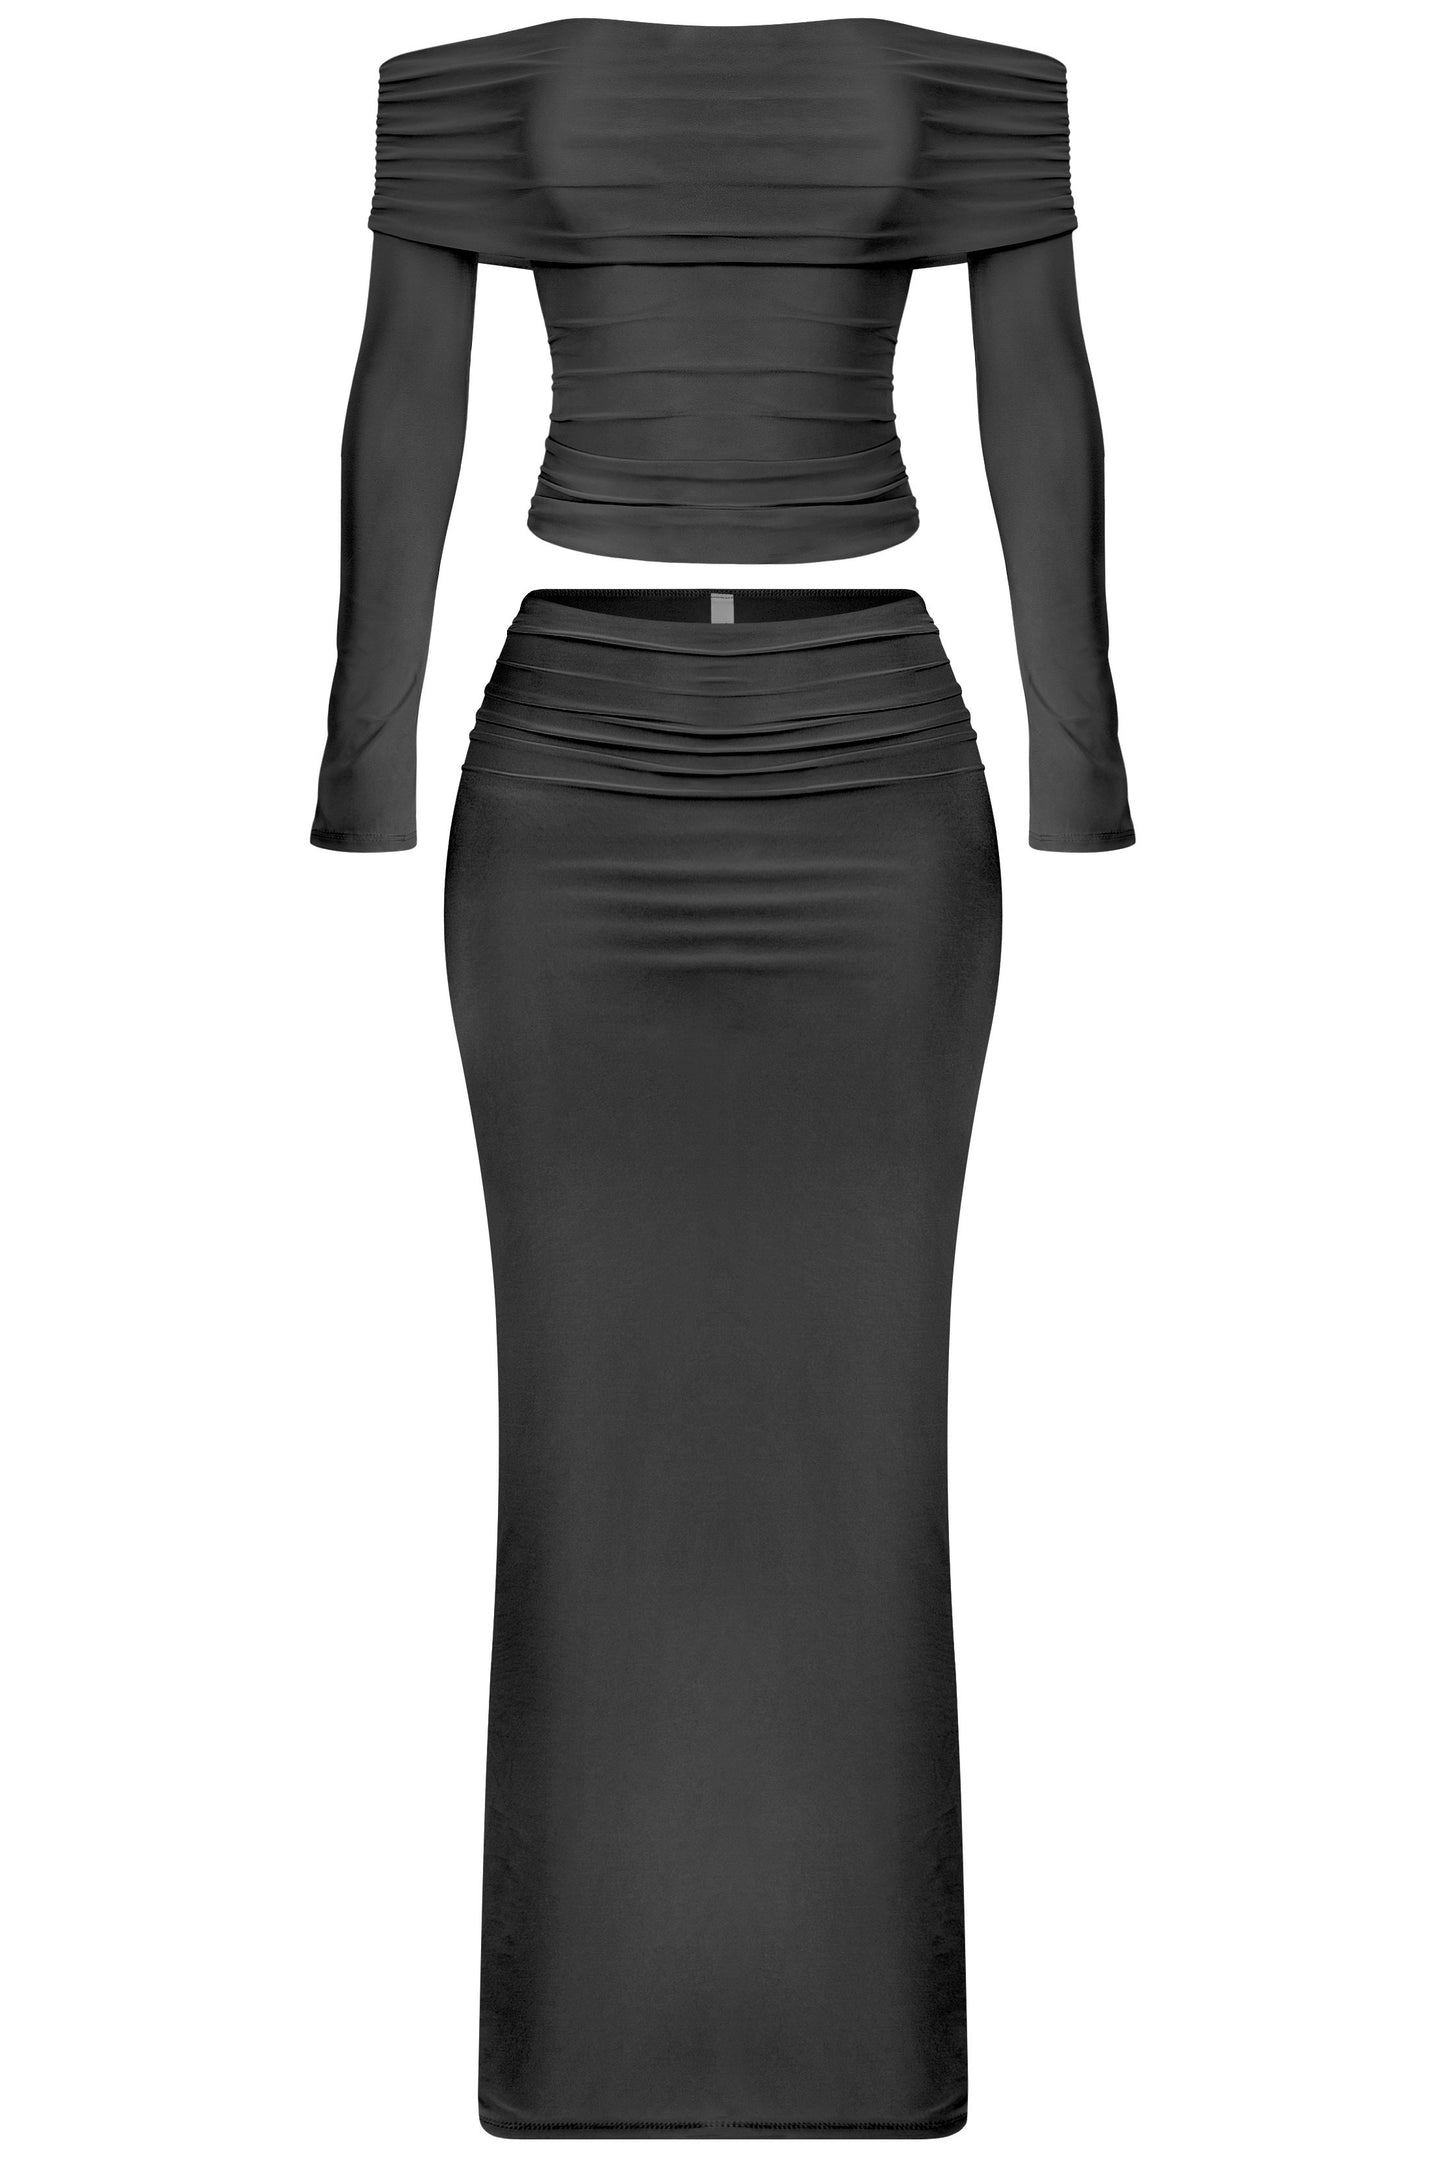 Jeanette 2pc skirt set - black